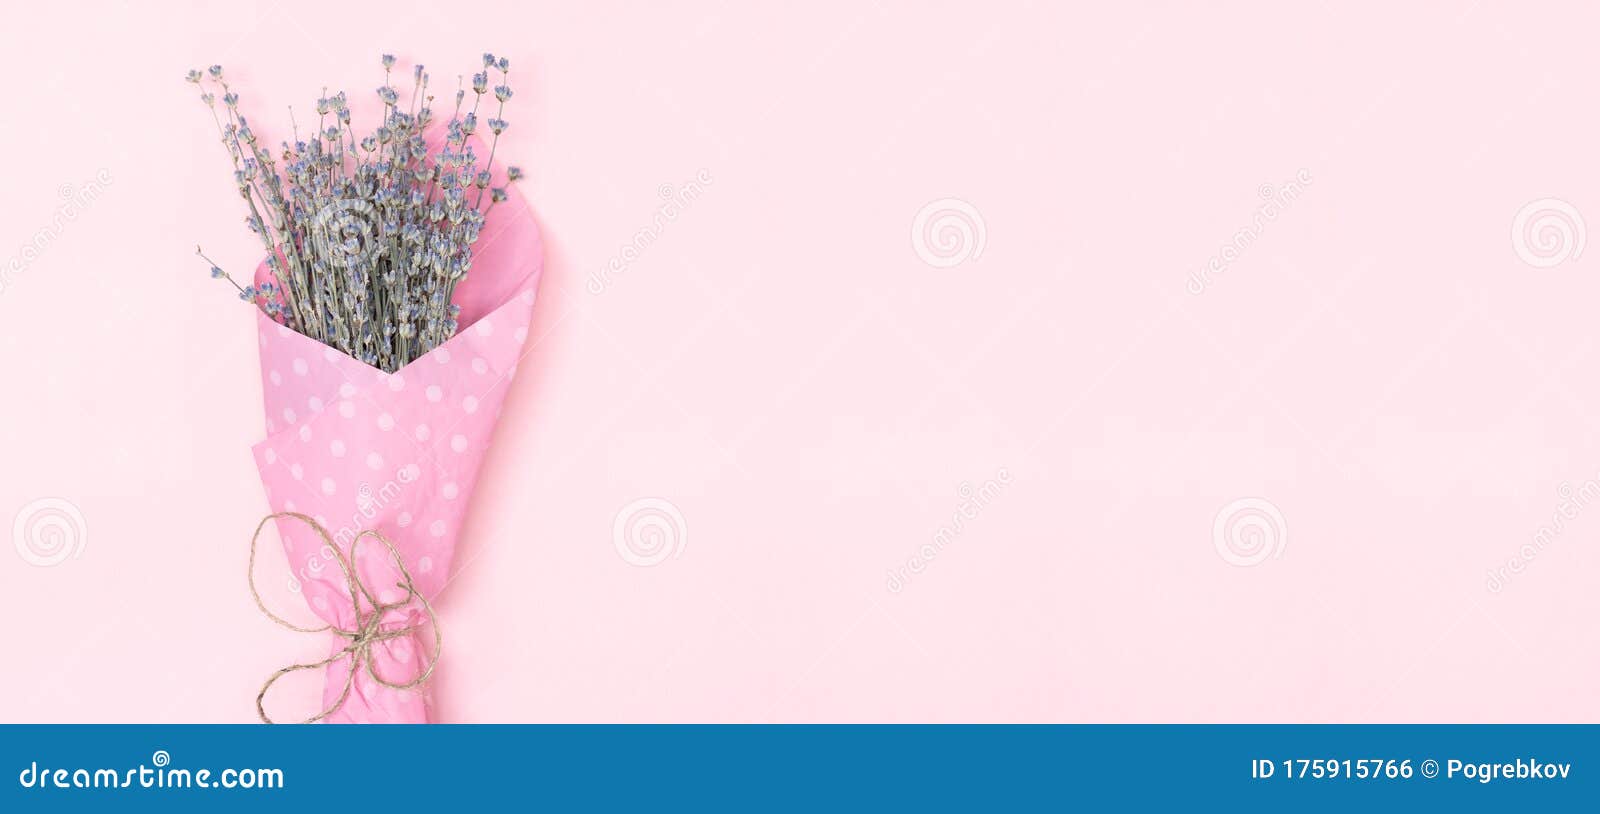 Bó hoa oải hương trên nền hồng tươi rực sẽ khiến chúng ta liên tưởng tới sự thanh thoát, tinh khiết và quý phái. Hãy đến và thưởng thức bức ảnh với sự kết hợp tuyệt vời này.